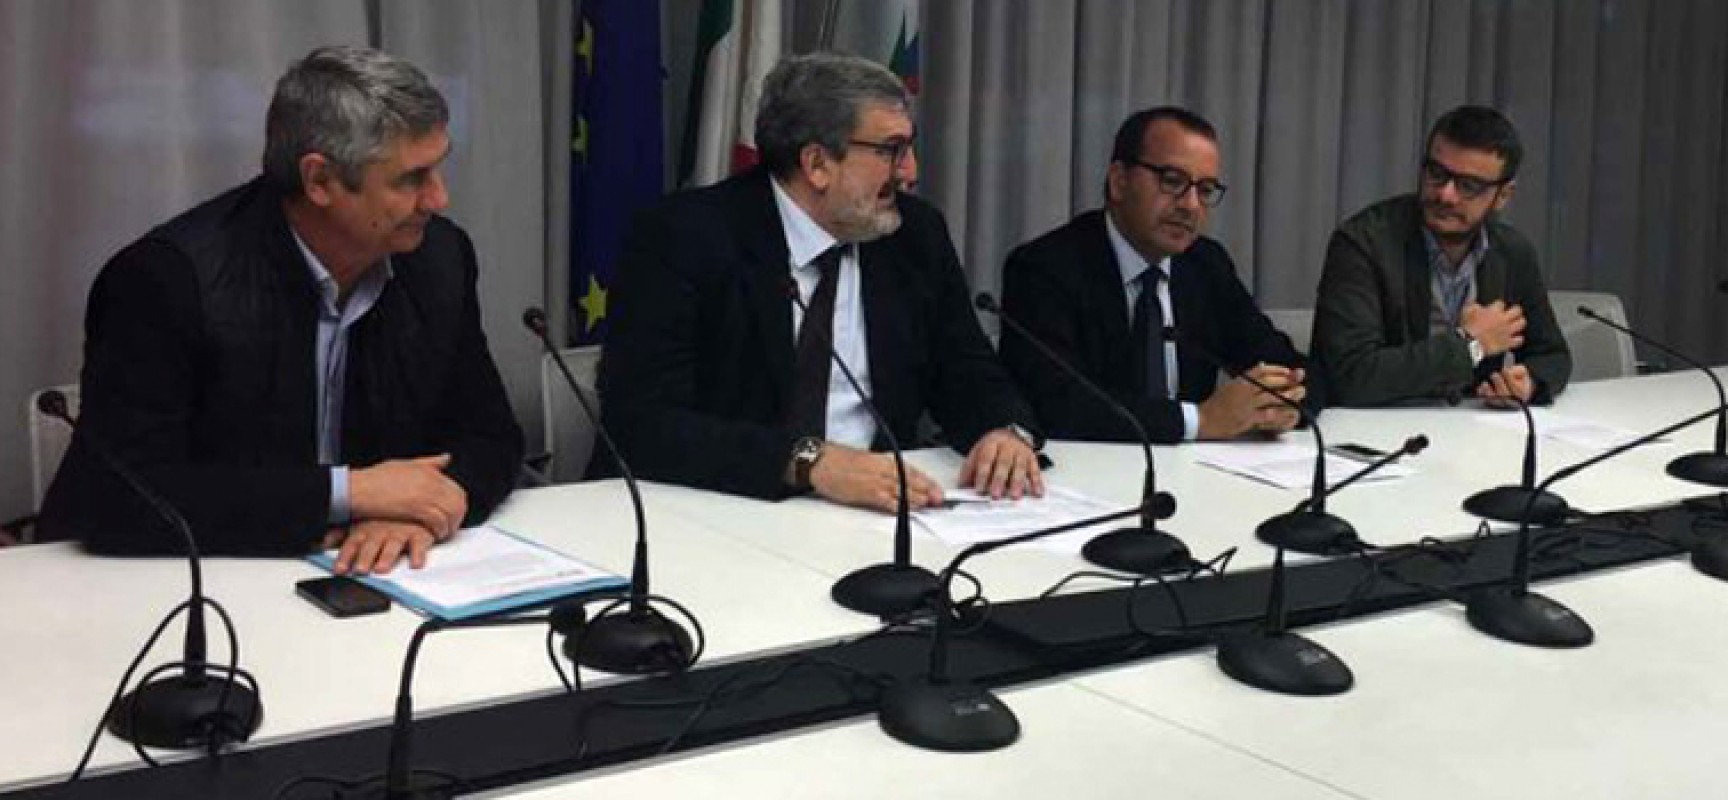 Comitato tesseramento Pd Puglia: “Renzi ha fatto esempio teorico”, Spina: “Verità vince sempre”